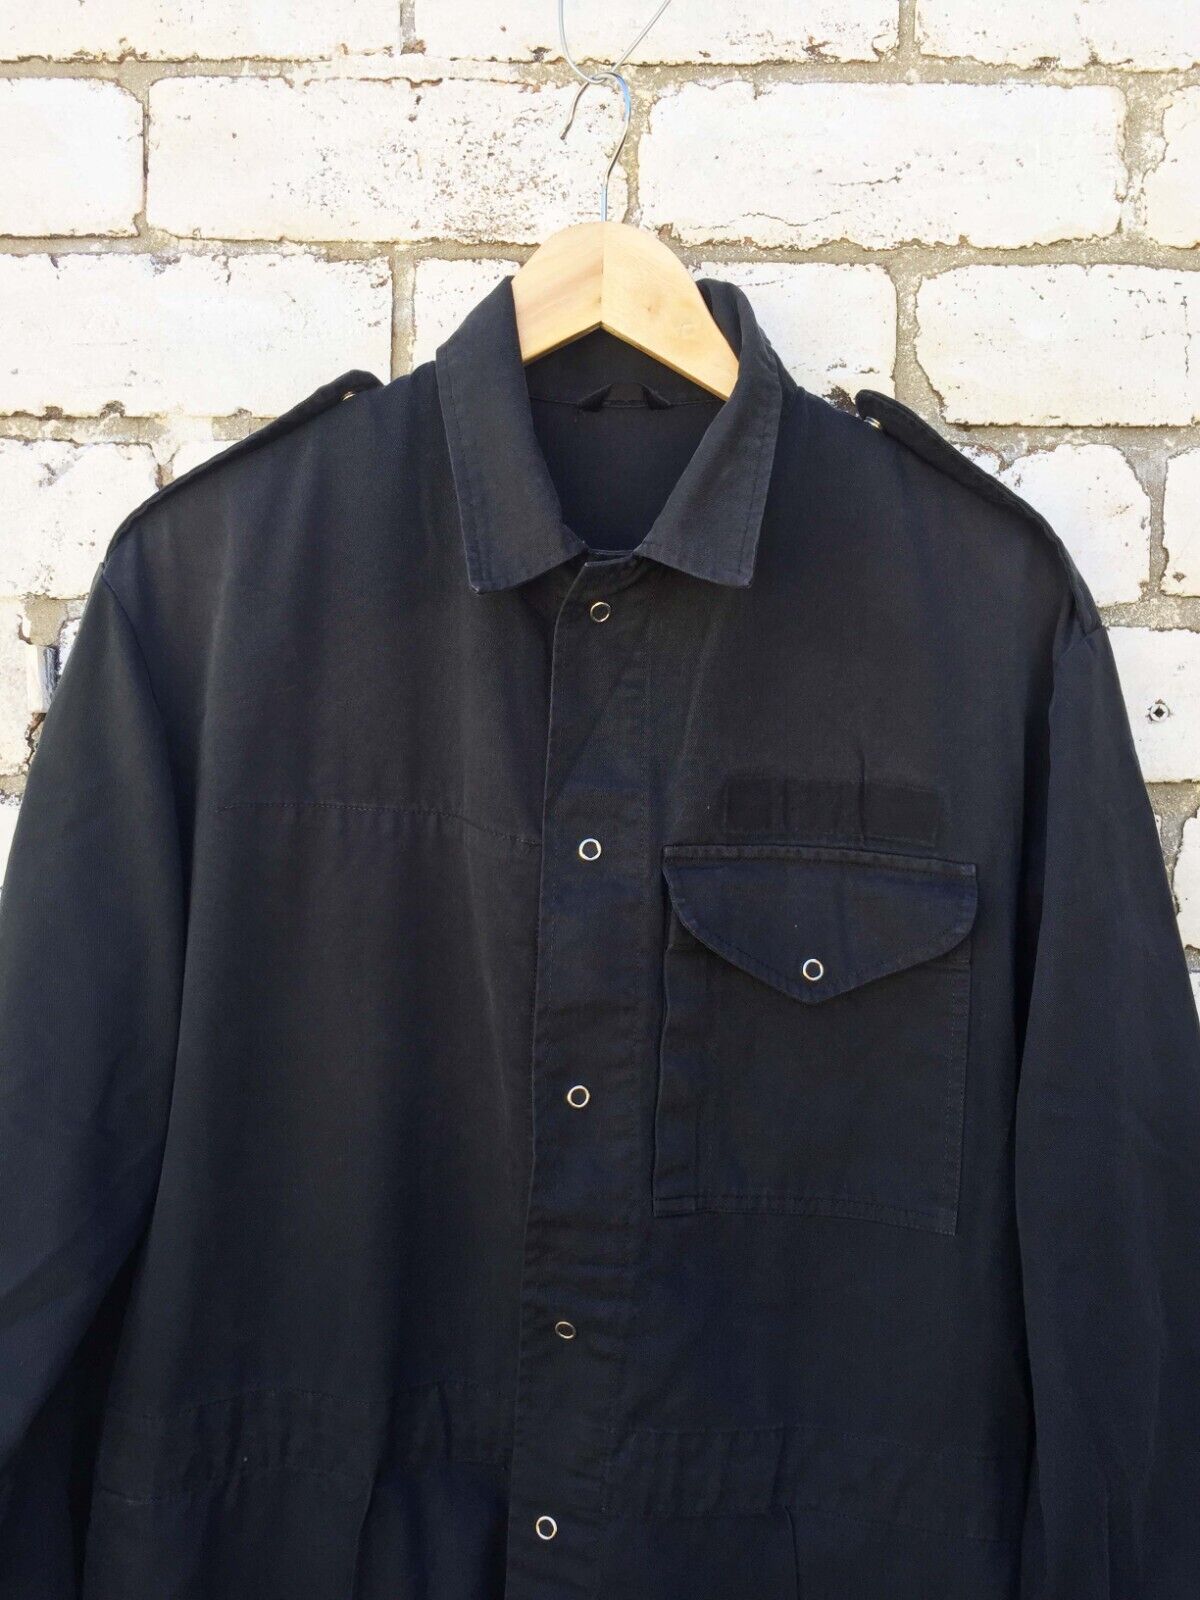 Vintage Black Military Boilersuit